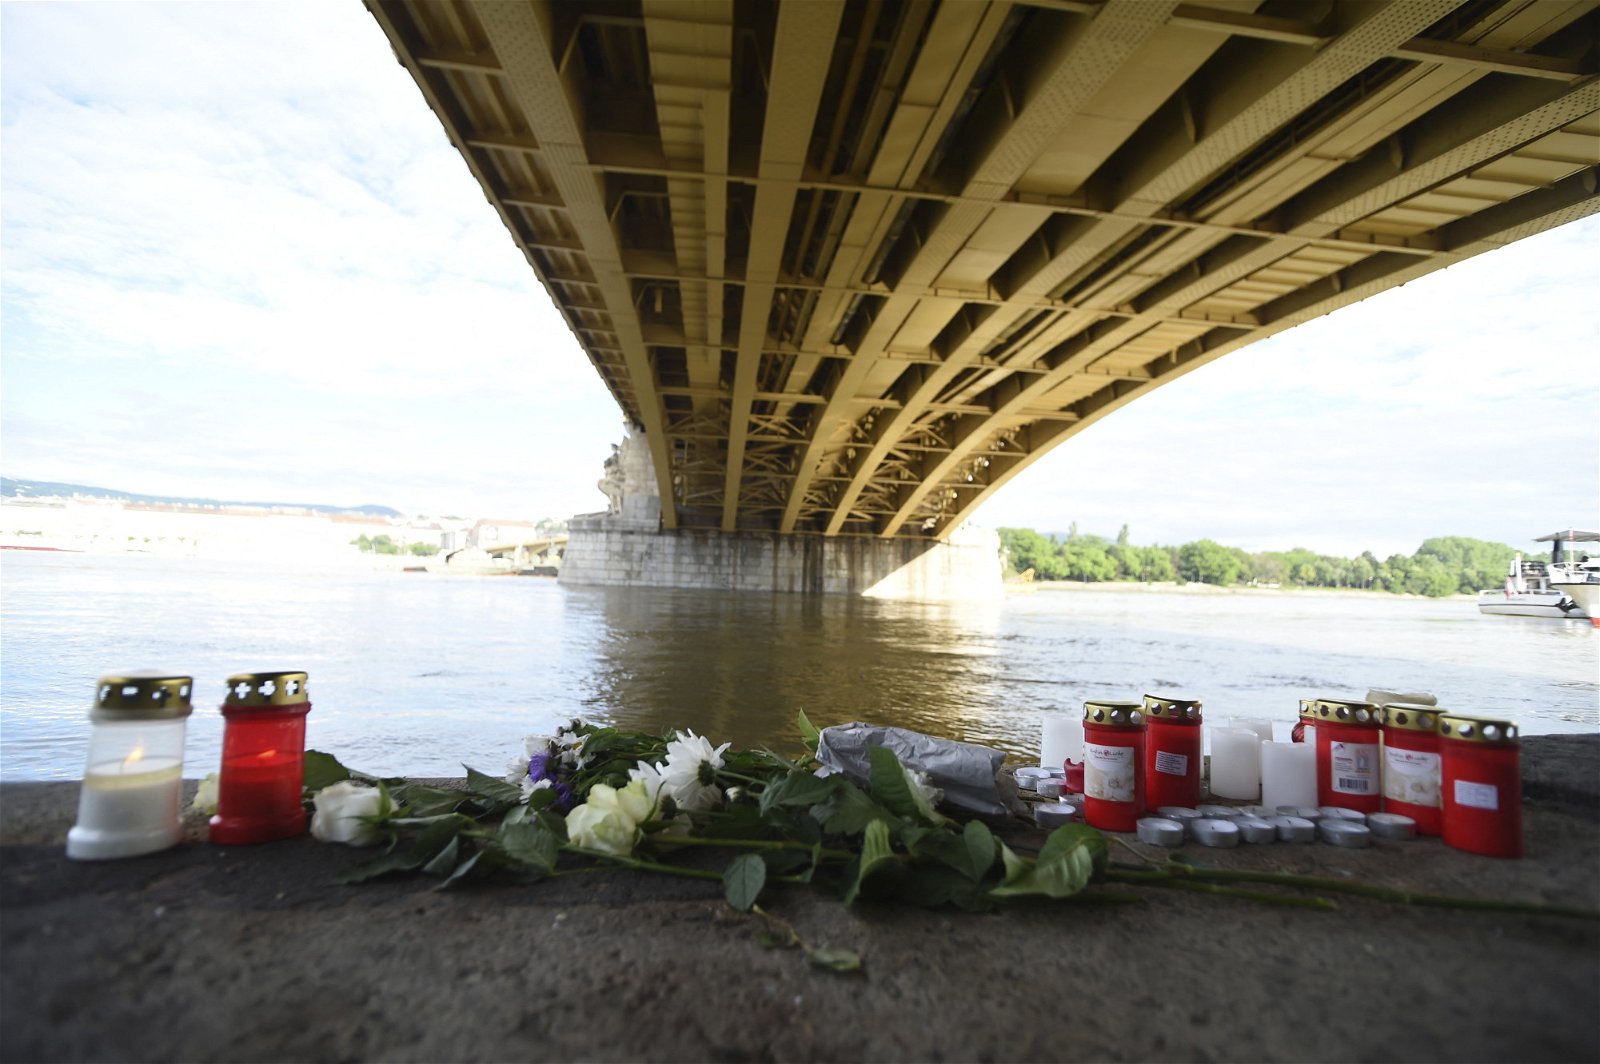 2019年5月31日，人们在匈牙利布达佩斯多瑙河，“人鱼”号观光船被撞沉没的事故现场，放置鲜花和蜡烛。（法新社档案照）